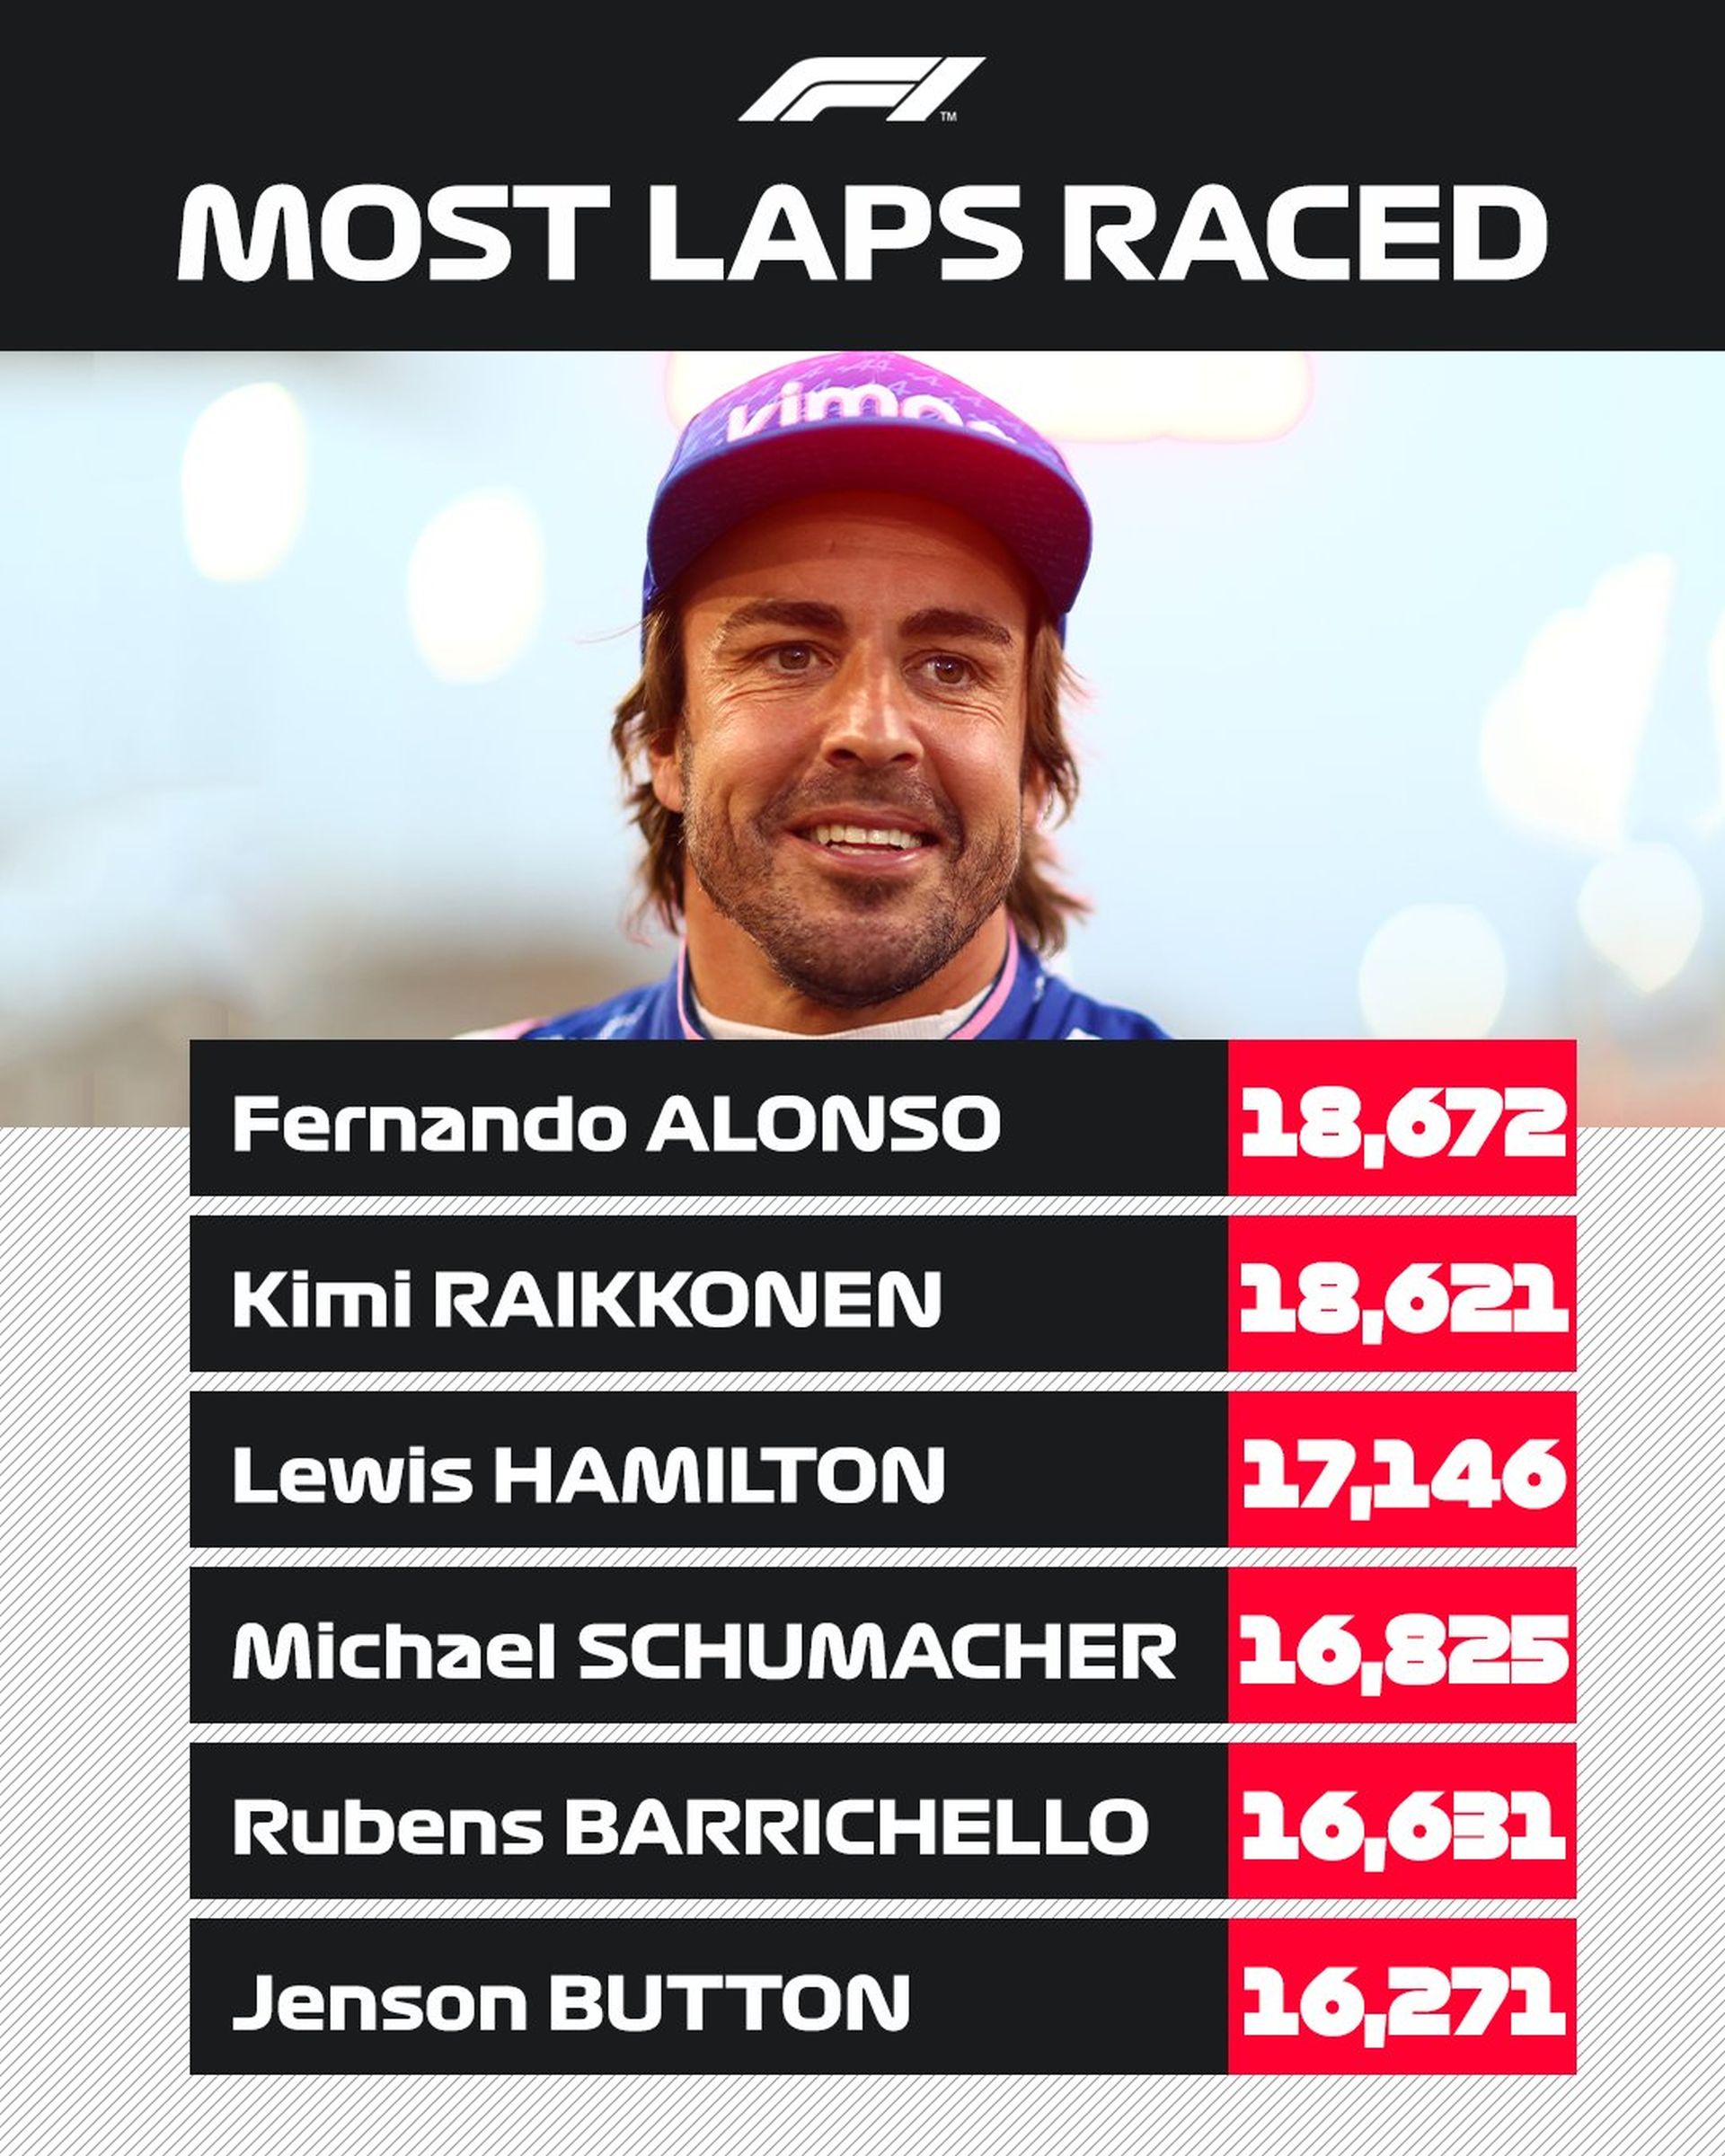 Οι οδηγοί με τους περισσότερους γύρους στην F1